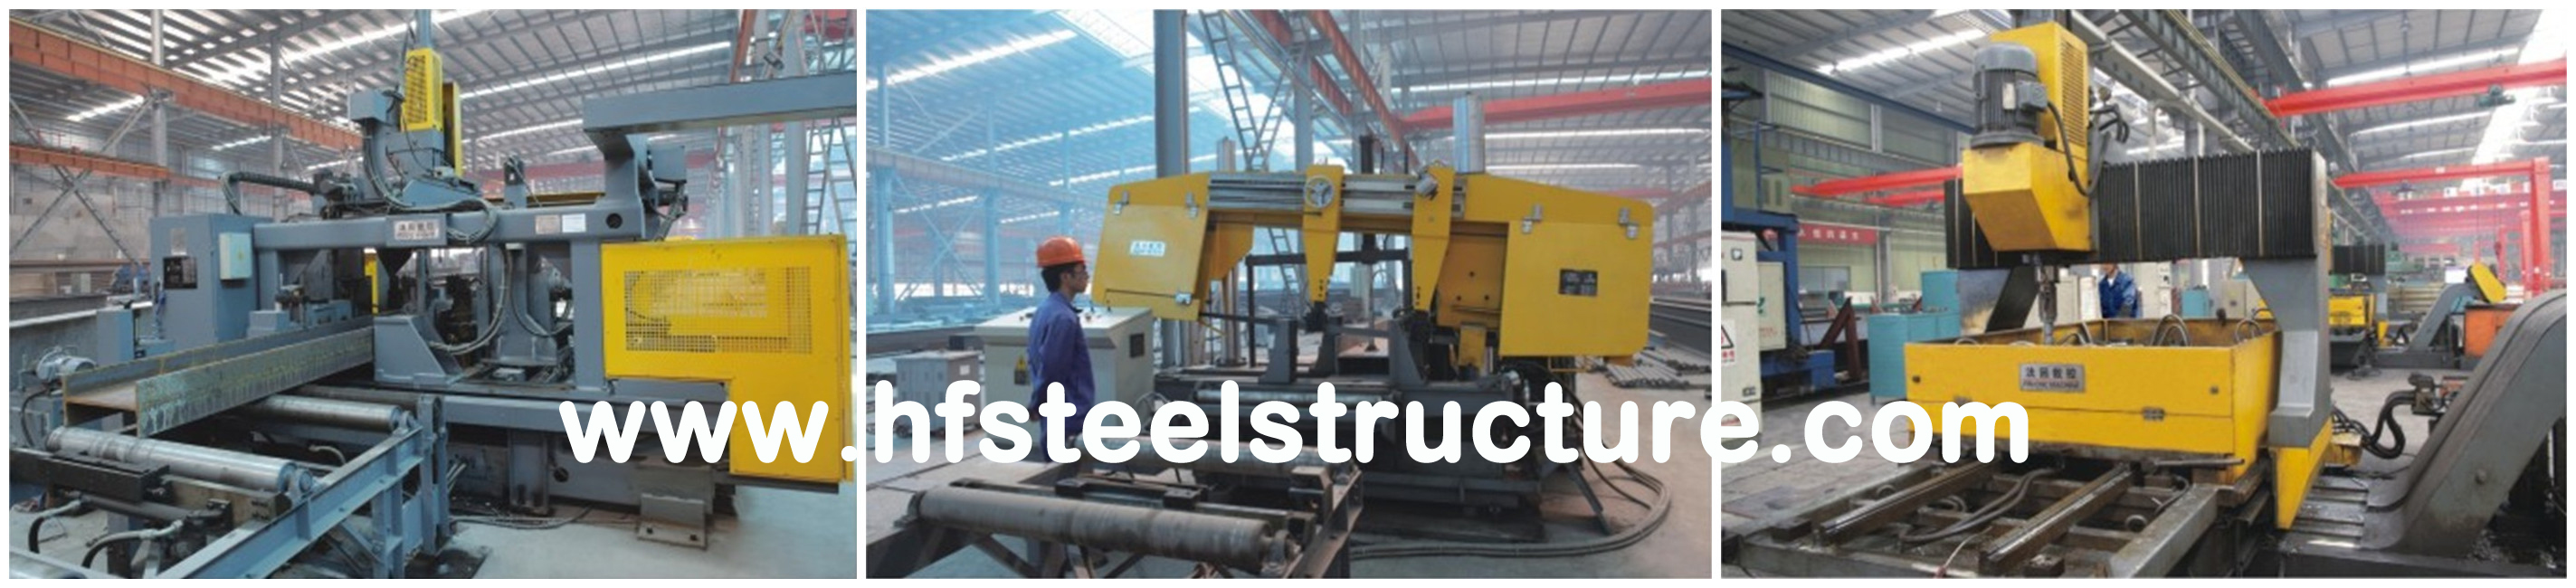 ASTM ПО МЕРЕ ТОГО КАК конструкция и изготовление здания различных стандартов JISG промышленные стальные